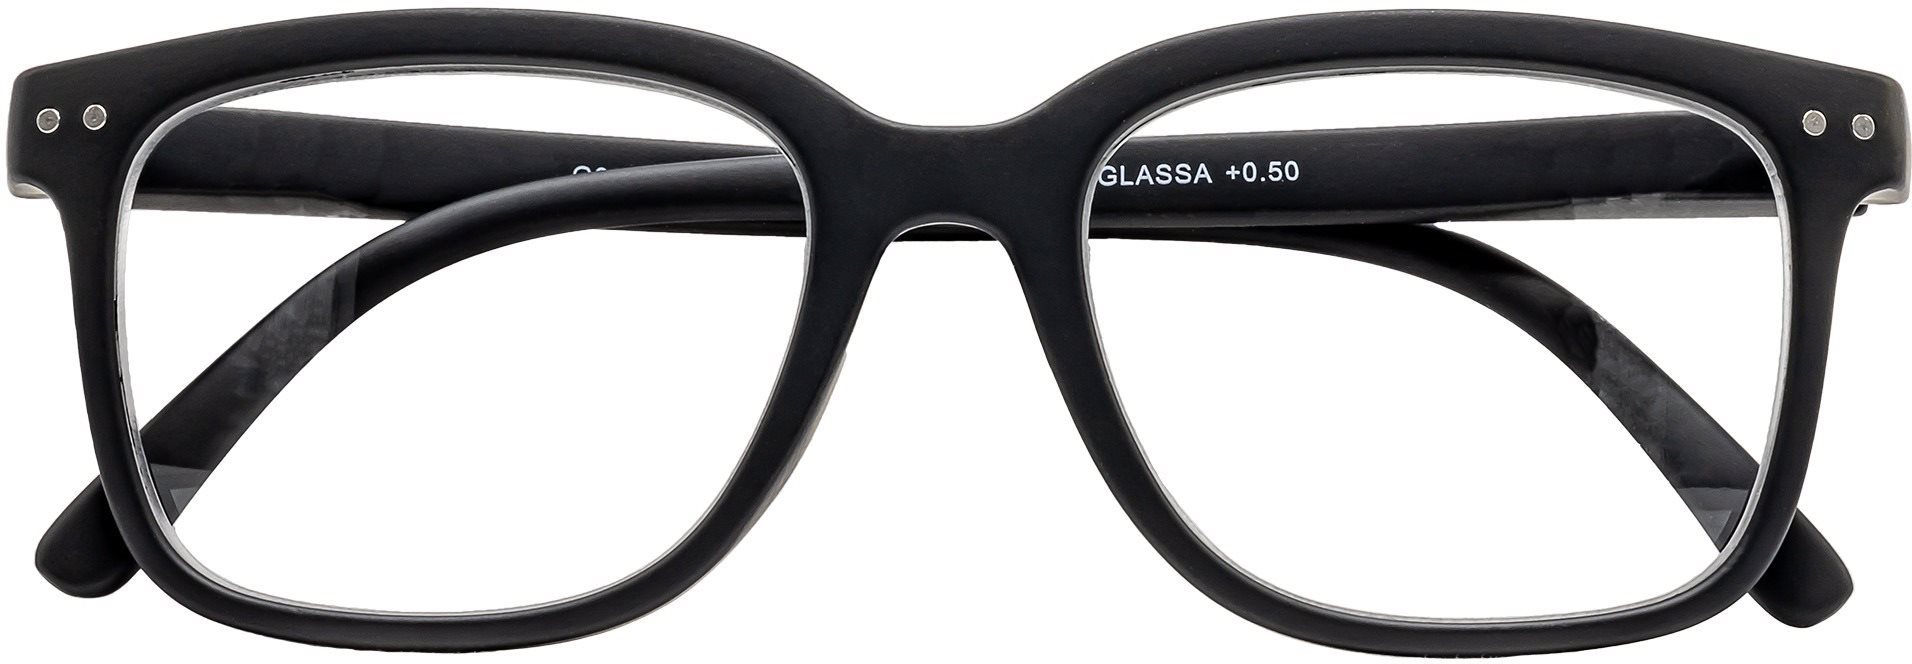 Okuliare GLASSA okuliare na čítanie G 033, +1,50 dio, čierne ...